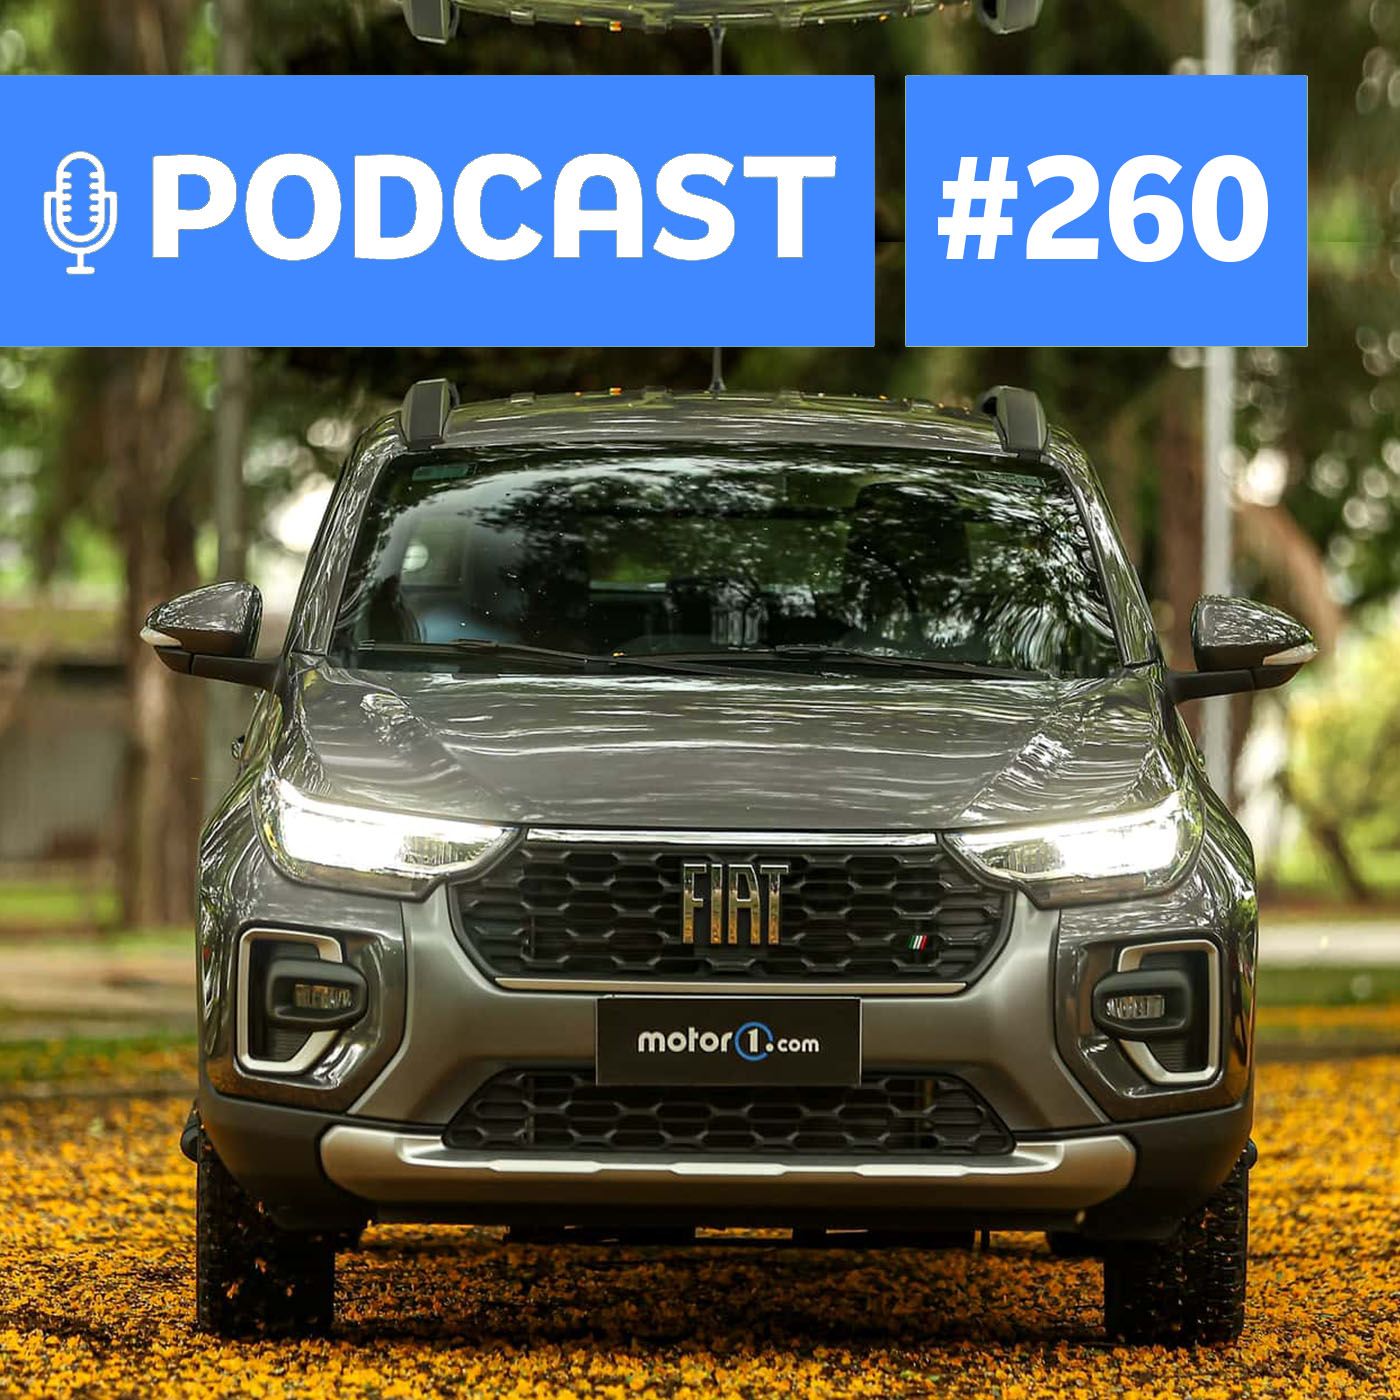 Motor1.com Podcast_ O mercado que vendeu 1 milhão de carros em 6 meses